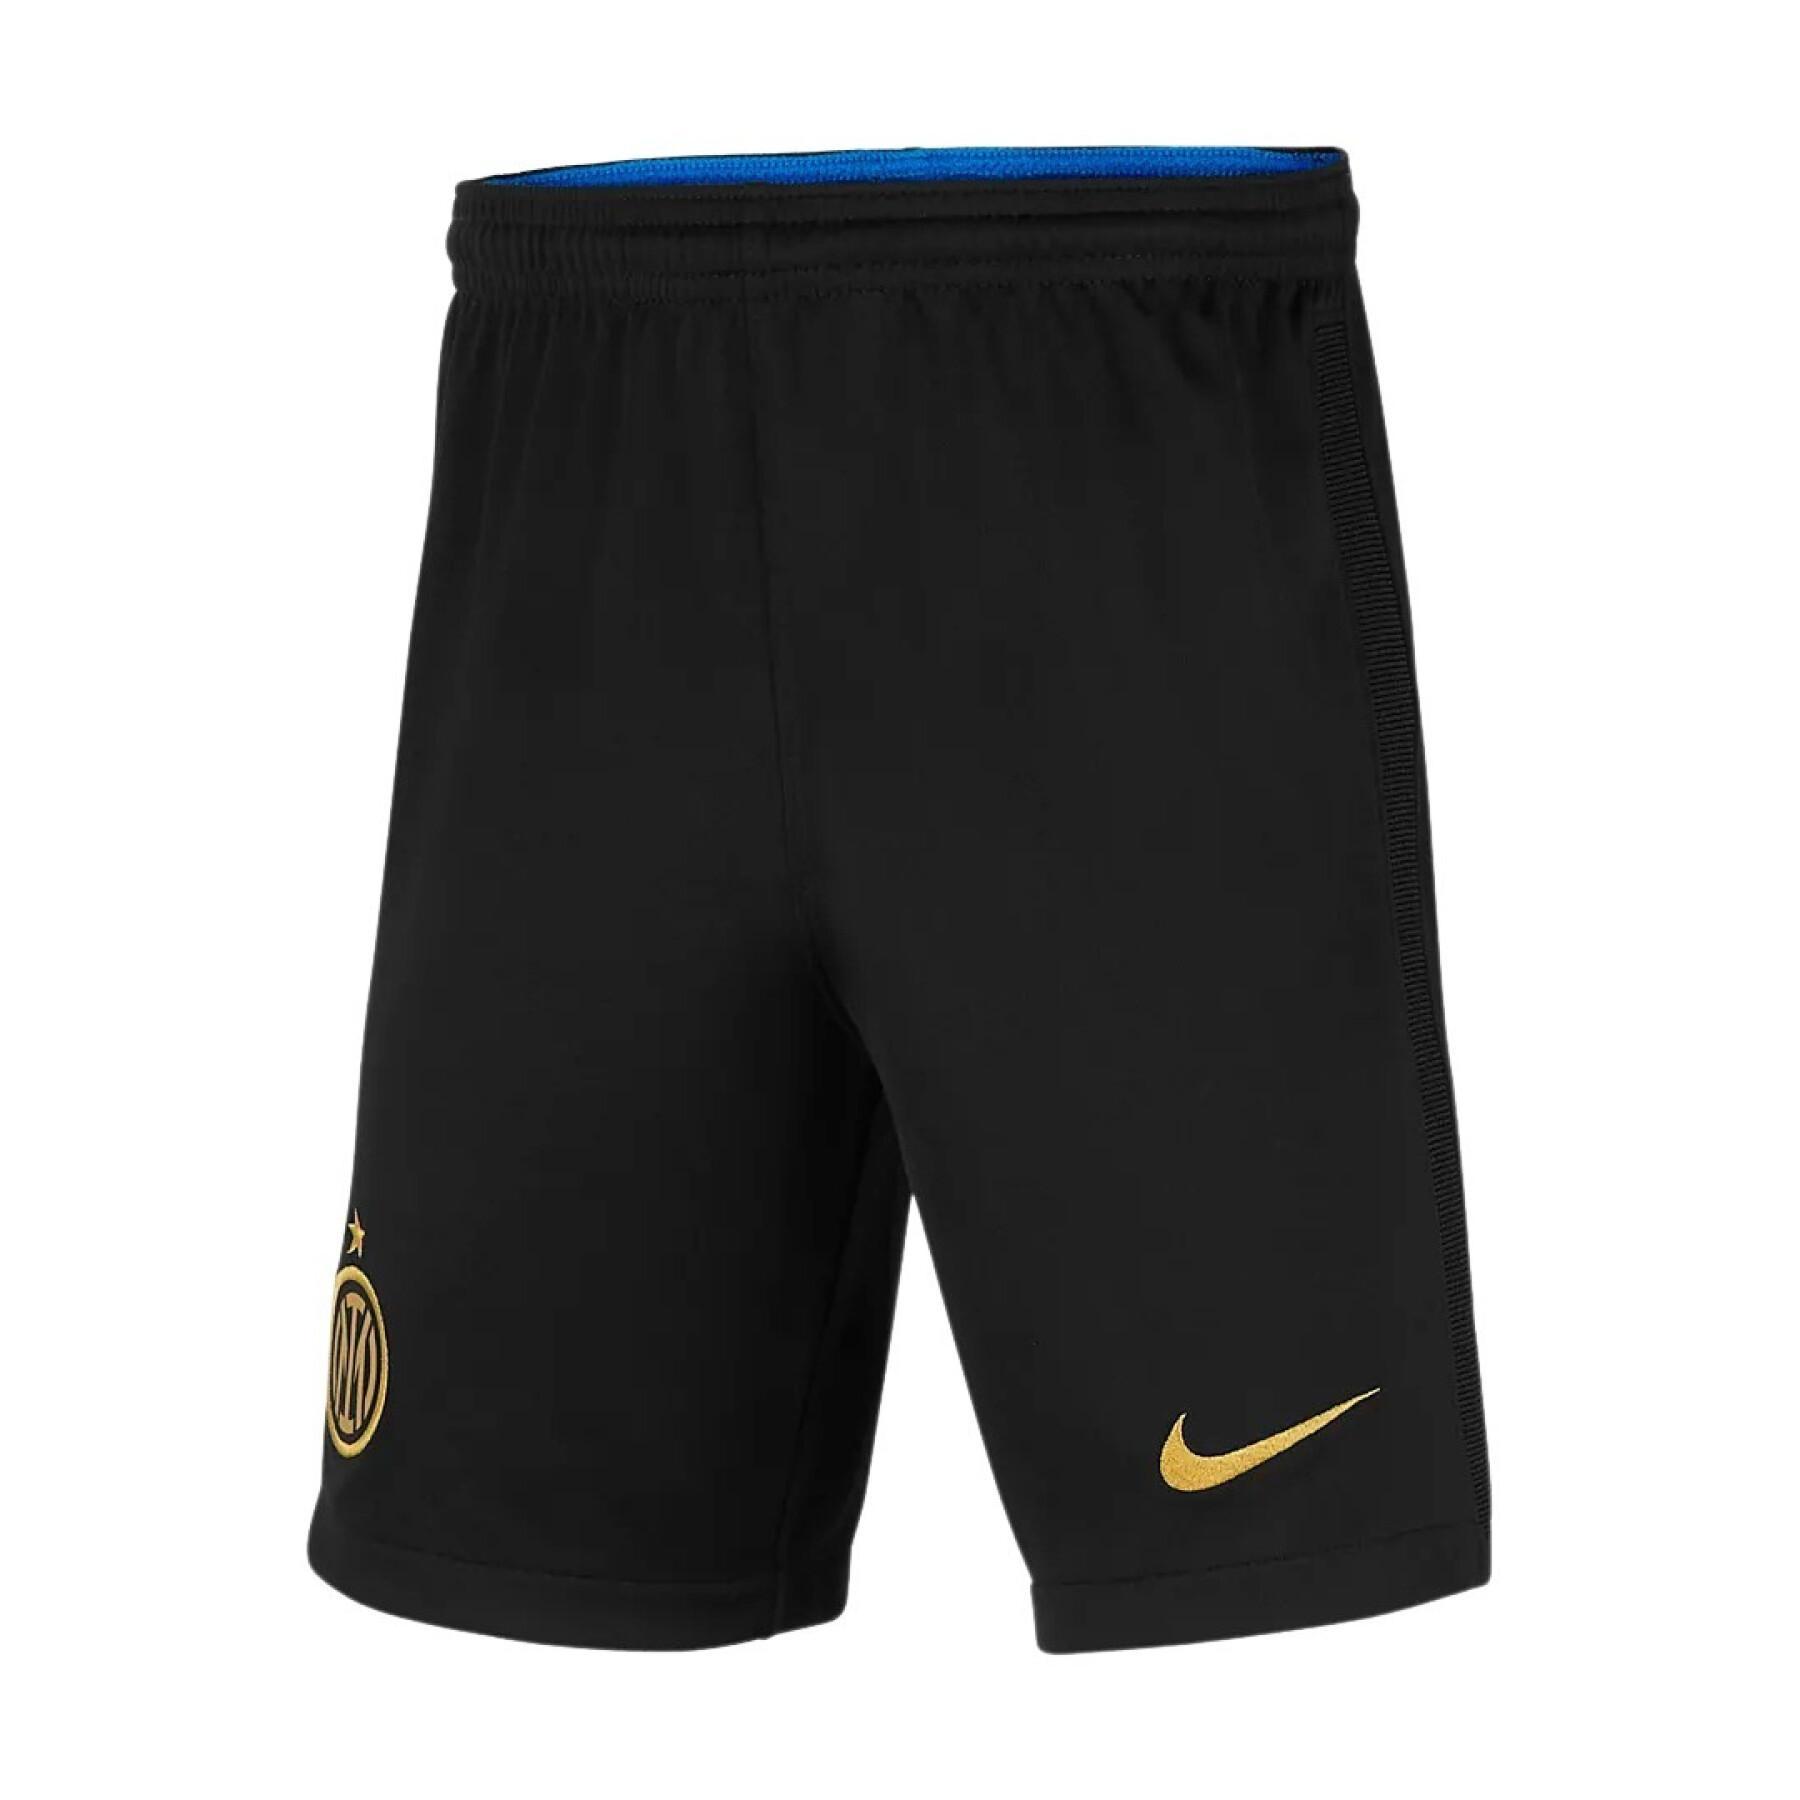 Kinder shorts Inter Milan 2021/22